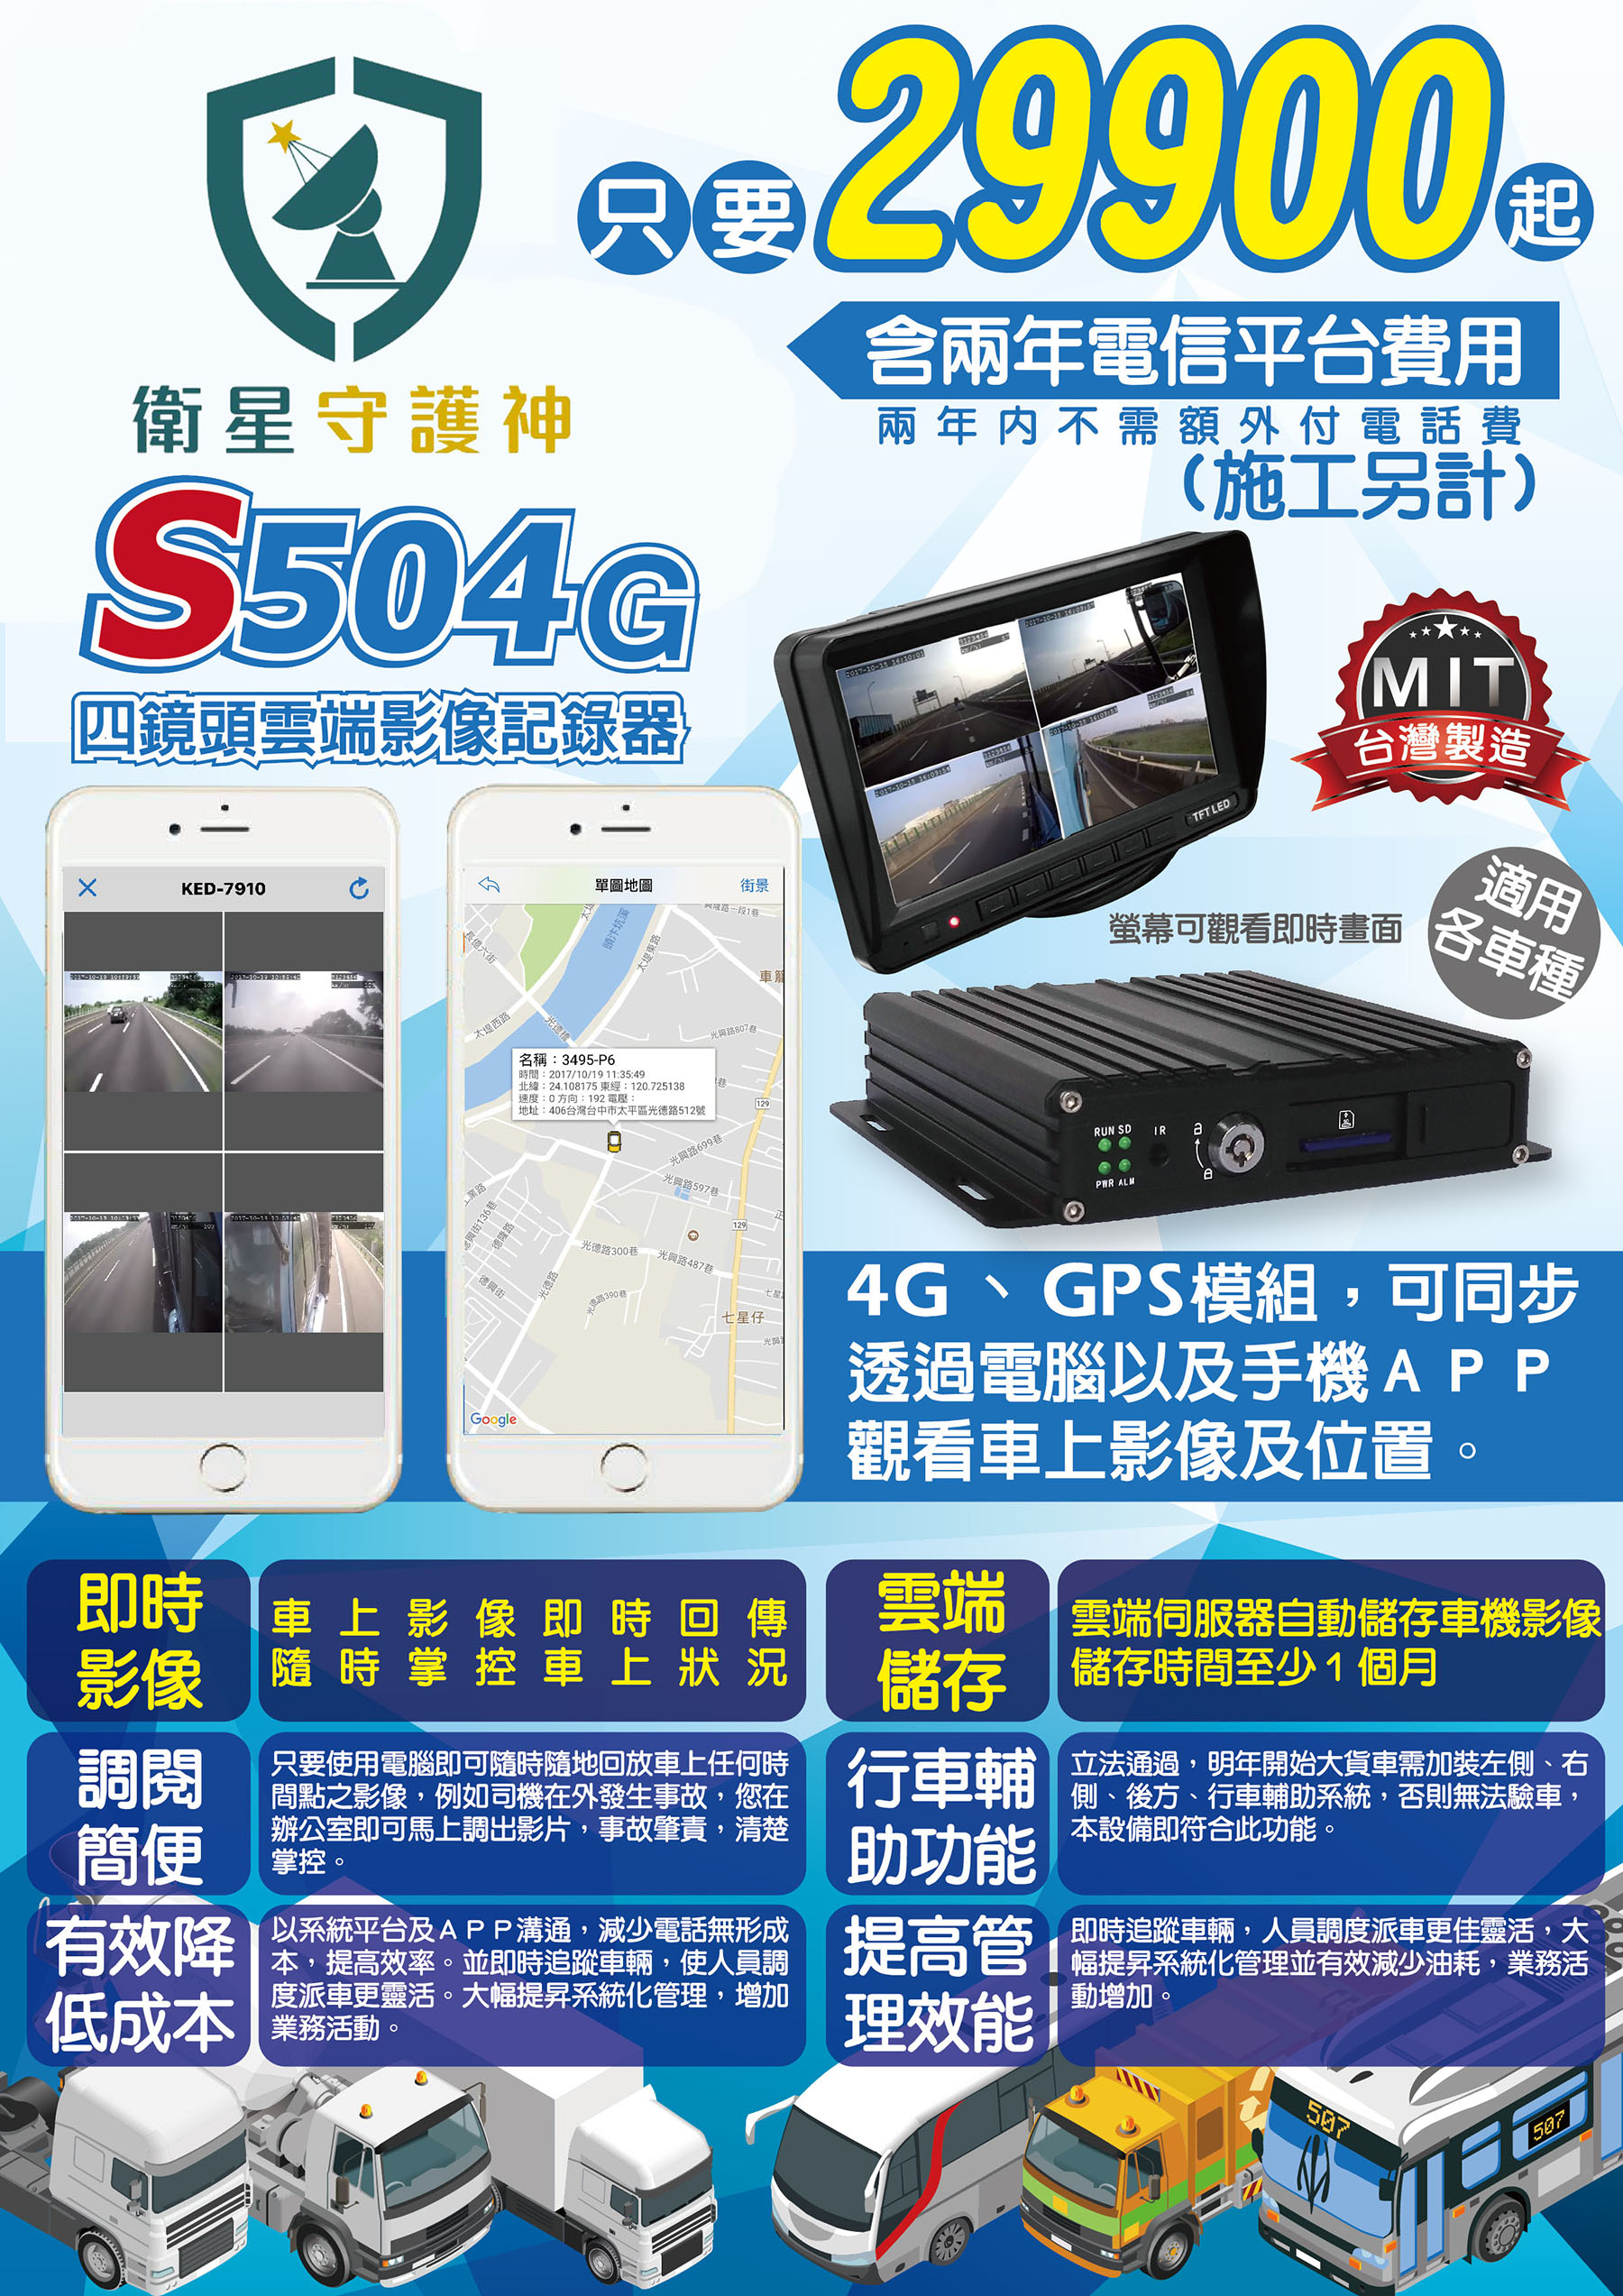 衛星守護神 S504 4G 多鏡頭行車記錄器 (車上影像監控,4G影像回傳)